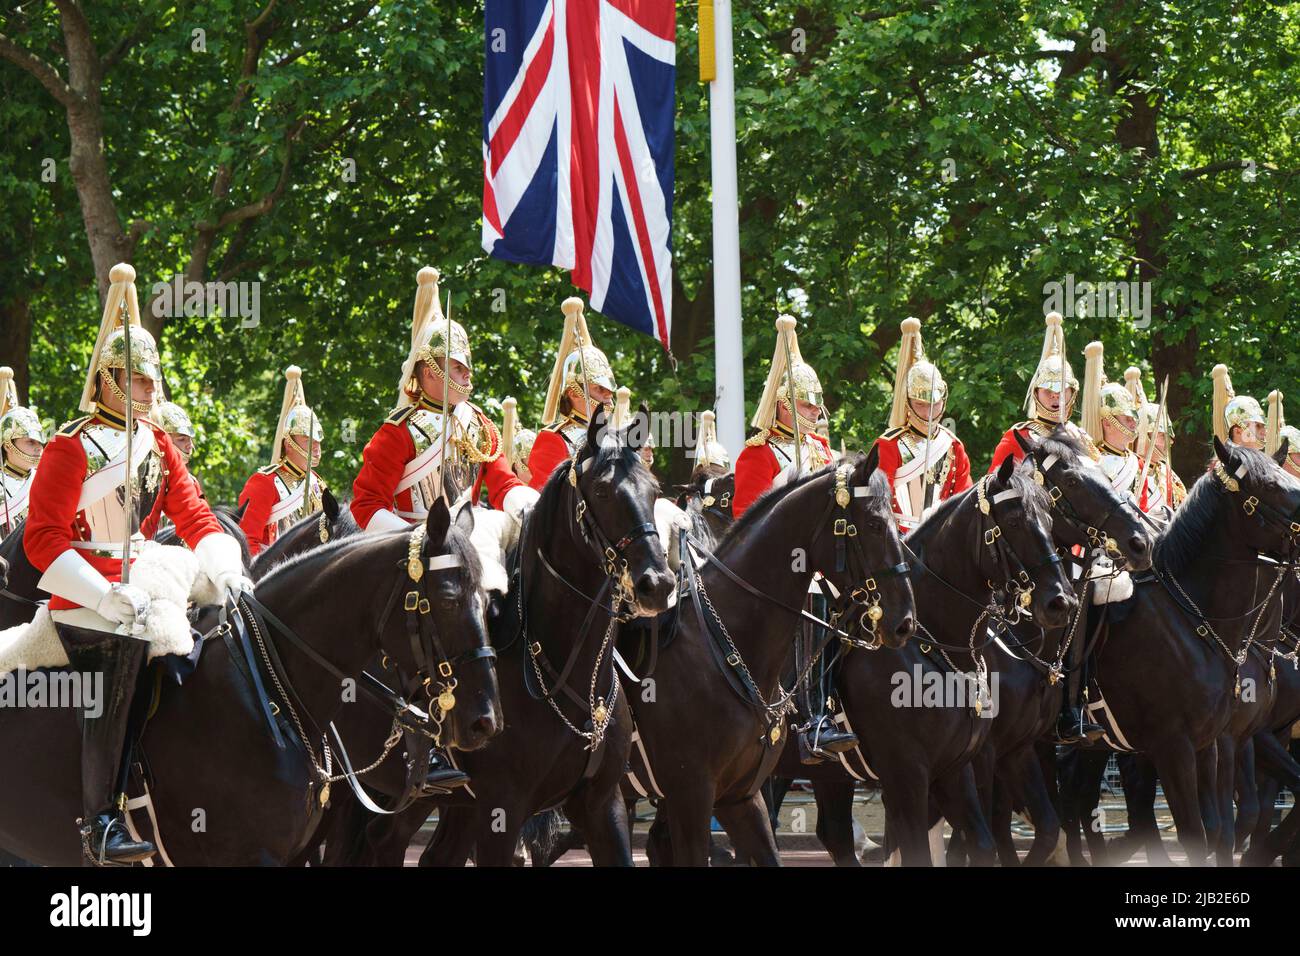 LONDRES - 2 JUIN : la cavalerie de la maison dans le centre commercial, lors de la cérémonie de Trooping the Color sur 2 juin 2022, dans le centre de Londres. Photo de David Levenson crédit: David Levenson/Alay Live News Banque D'Images